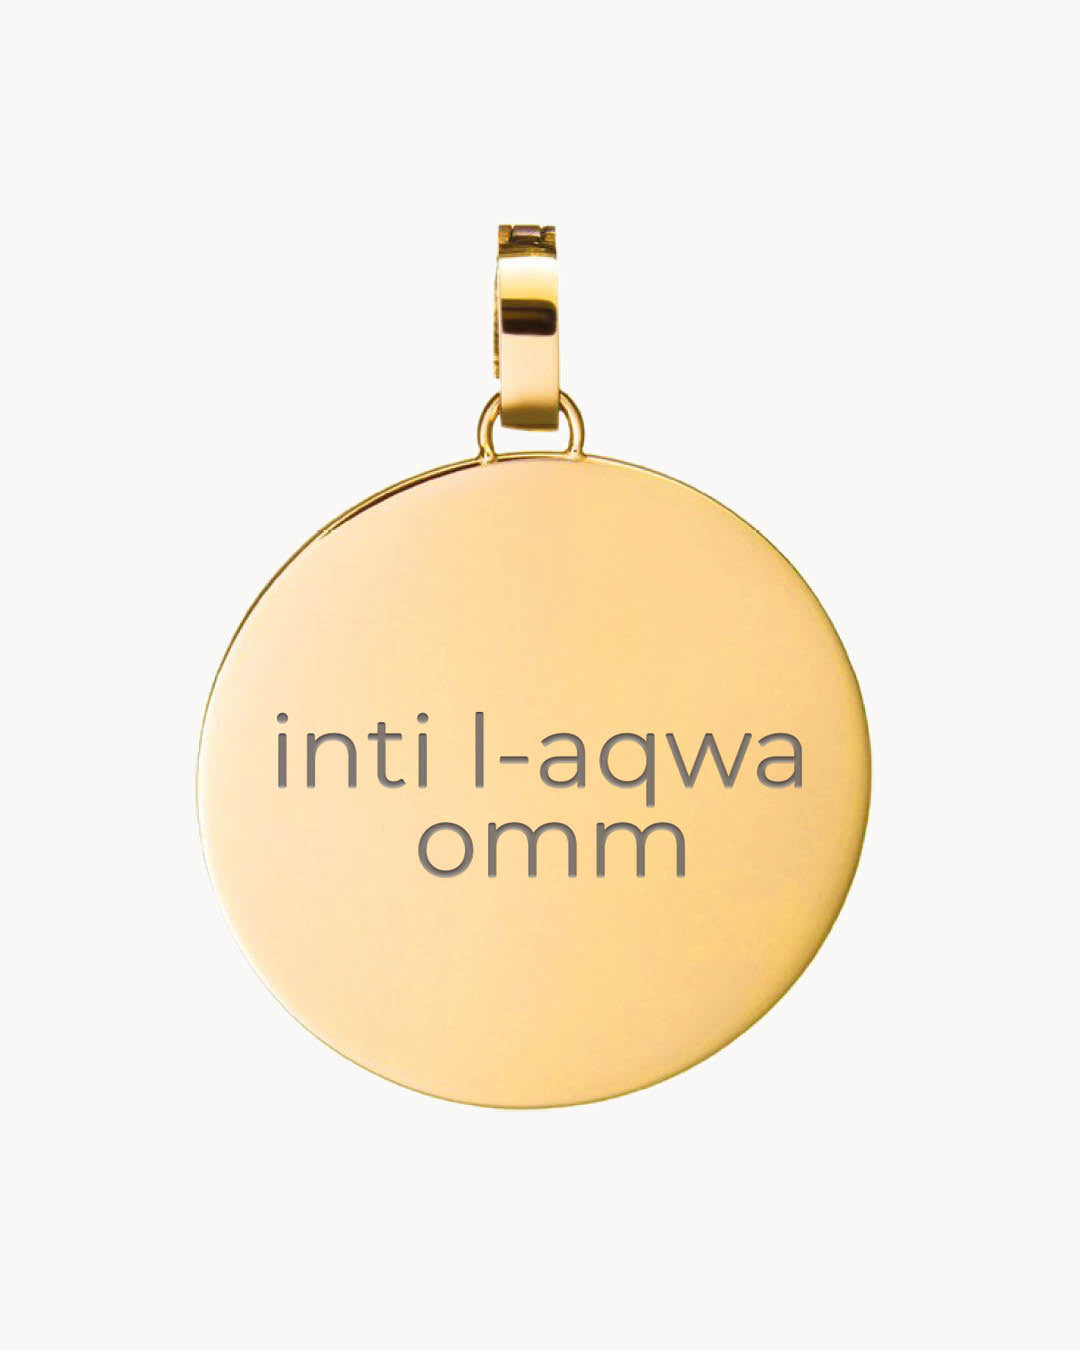 Mum Medium Disc Engraved Pendant, Gold